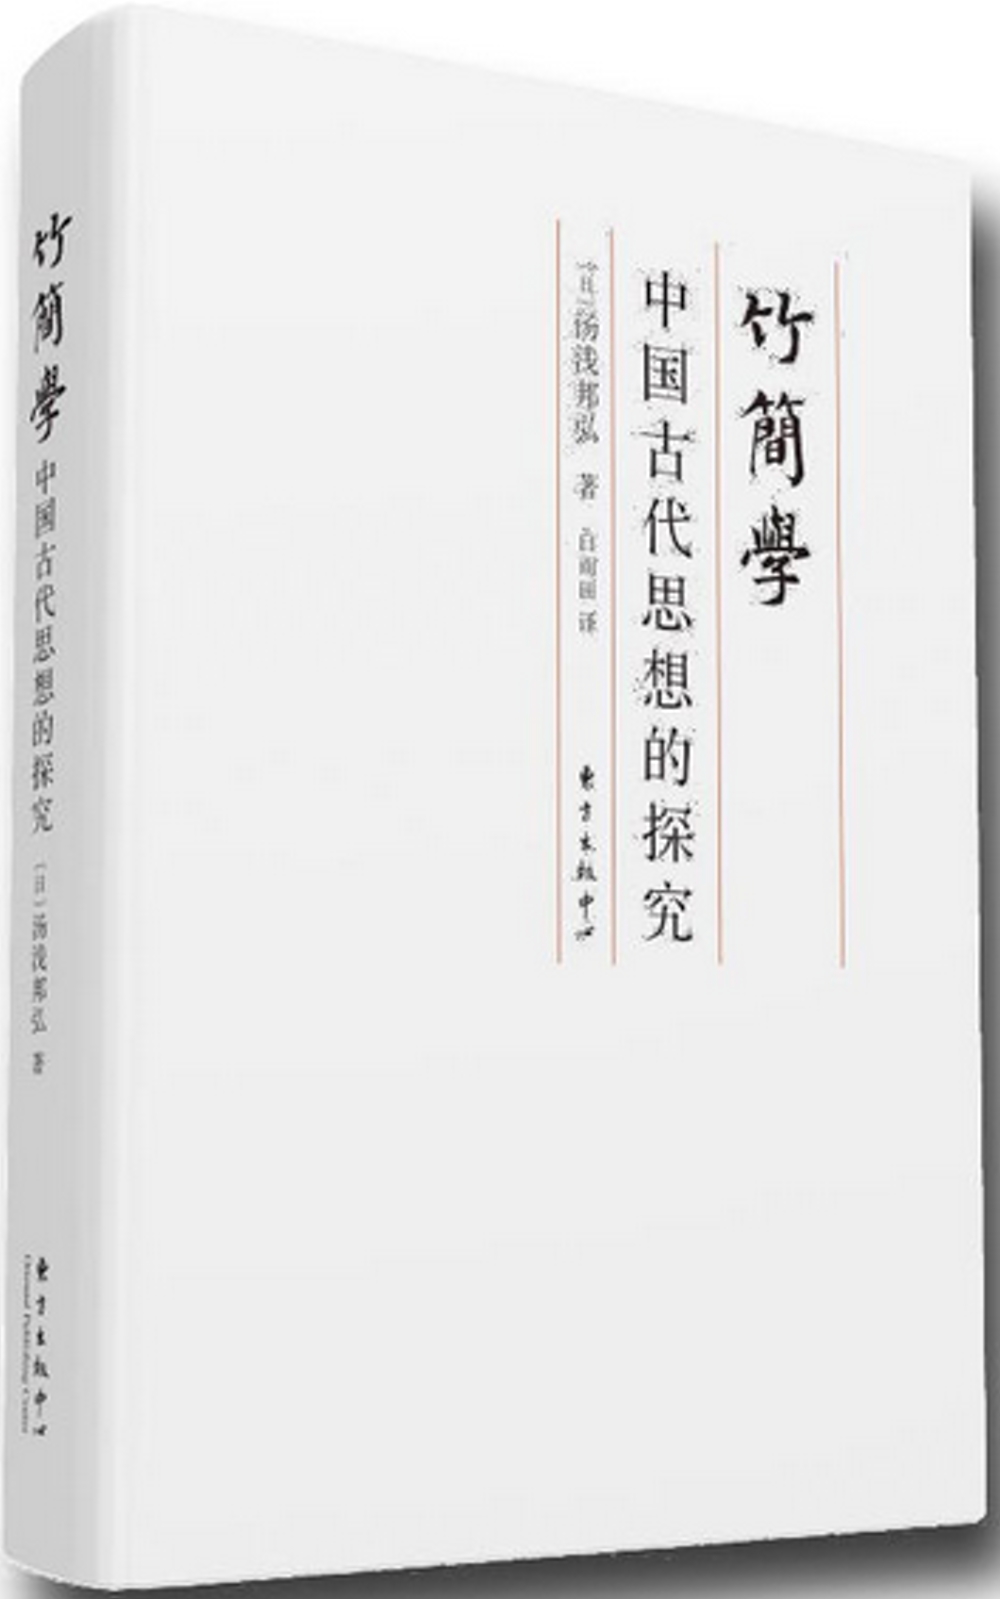 竹簡學：中國古代思想的探究